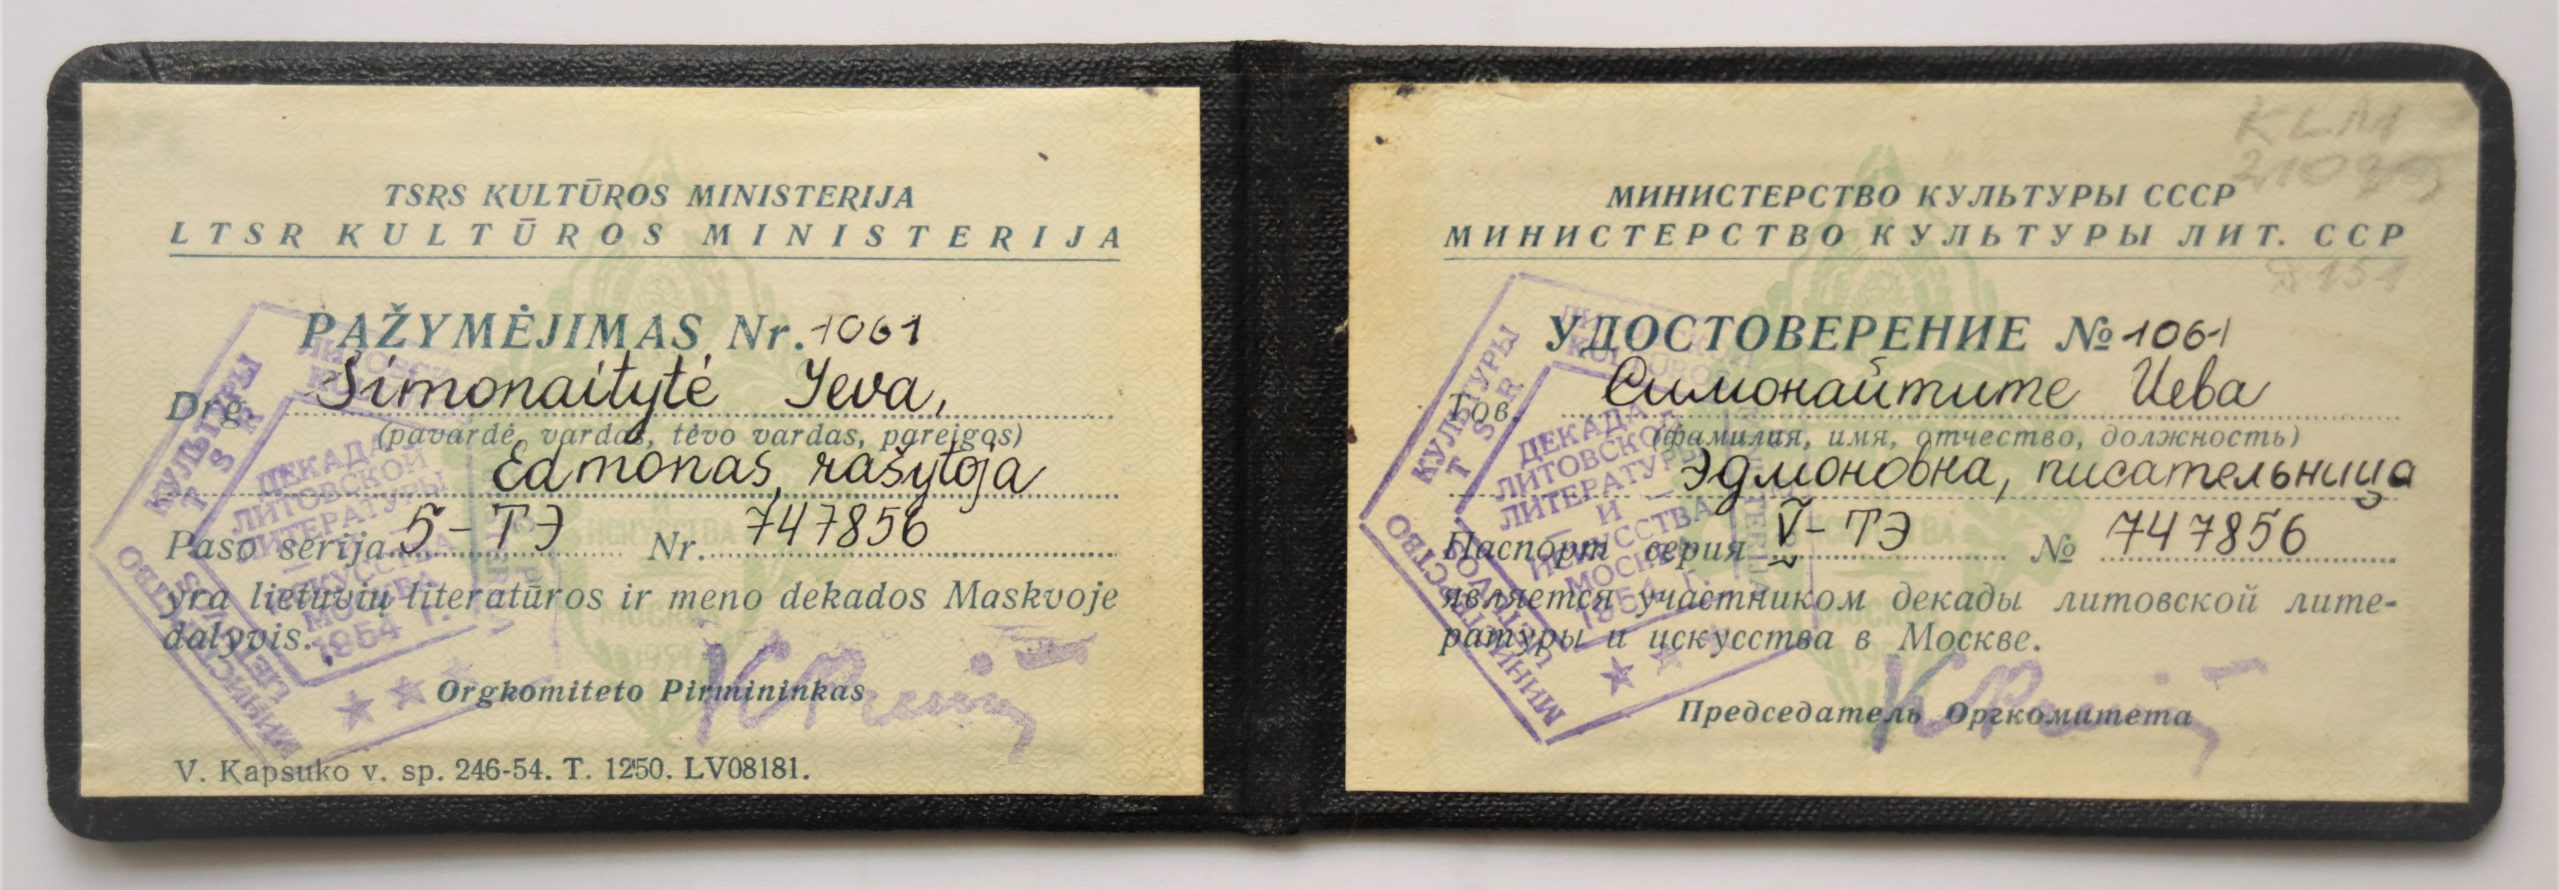 Lietuvių literatūros ir meno dekados Maskvoje dalyvio pažymėjimas Nr. 1061. Vilnius, 1954 m.